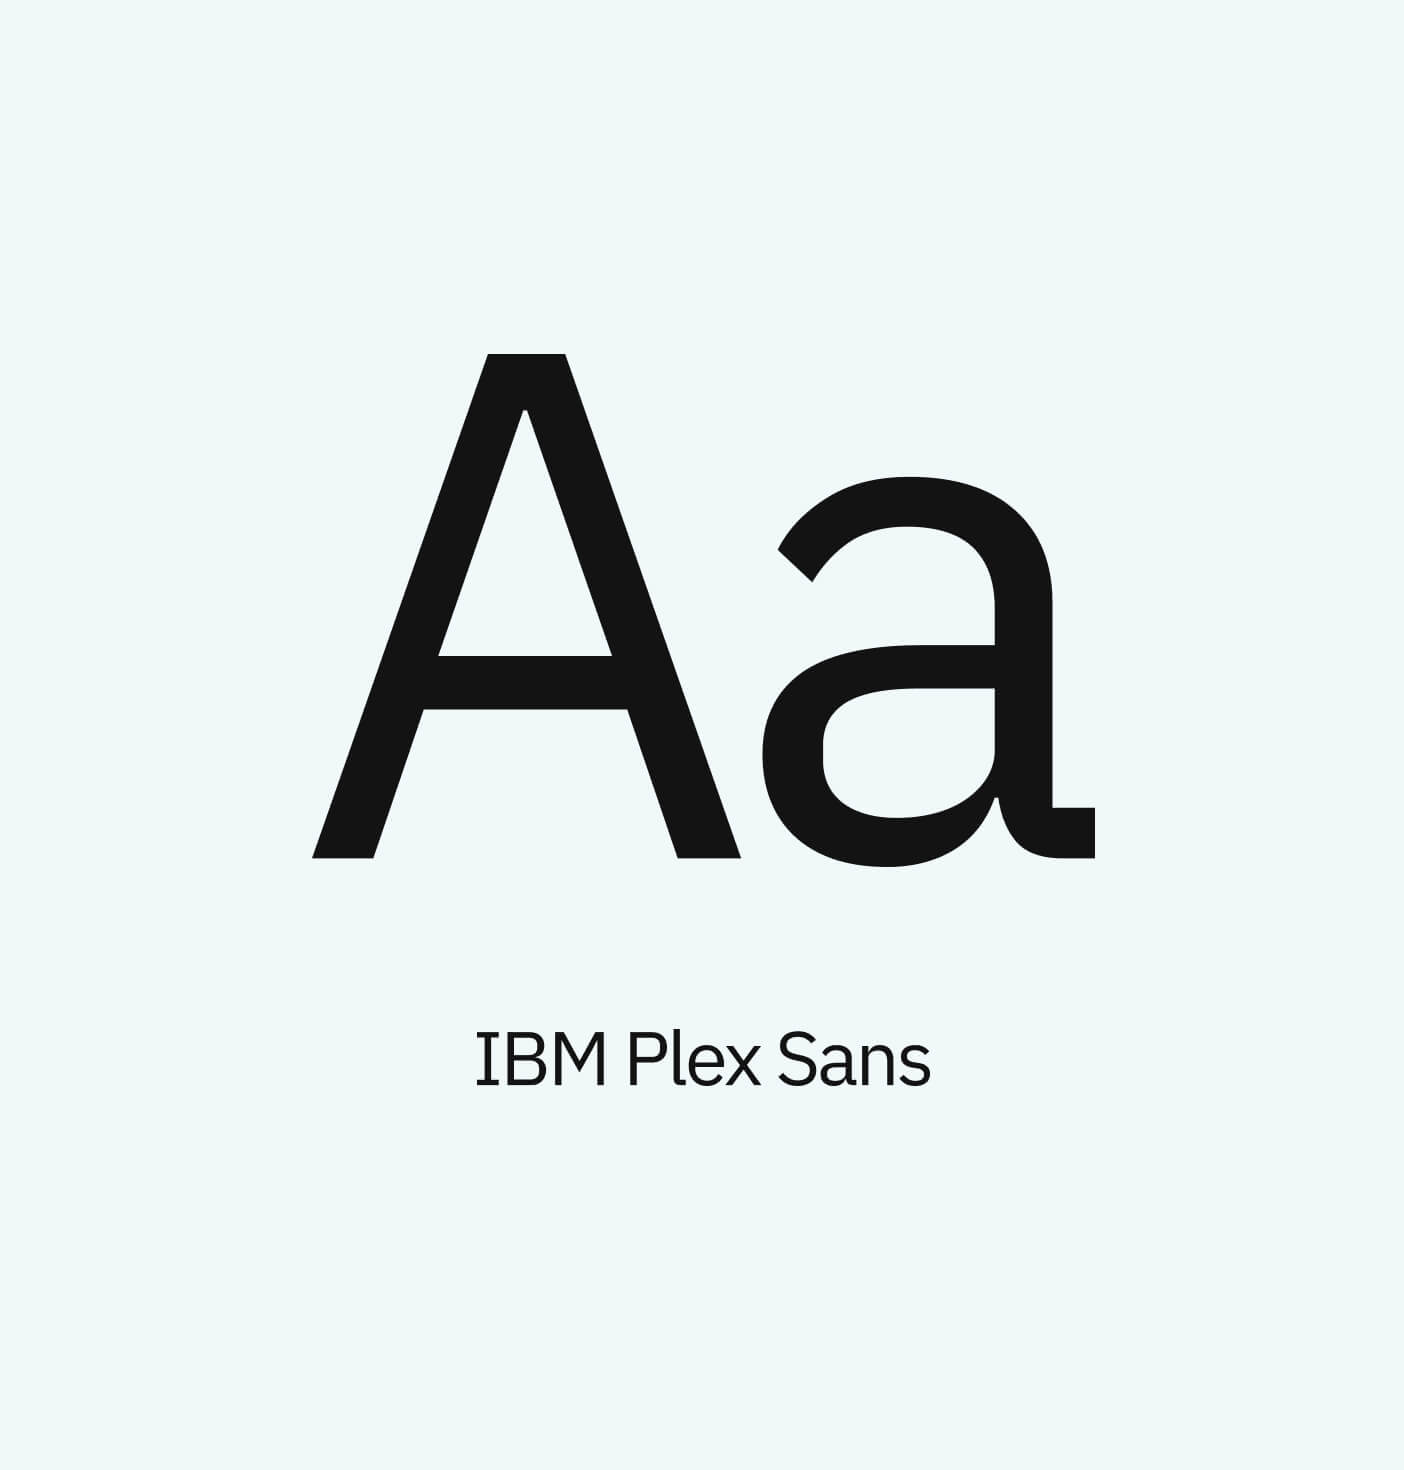 A letterform of the letter A for the font IBM Plex Sans.